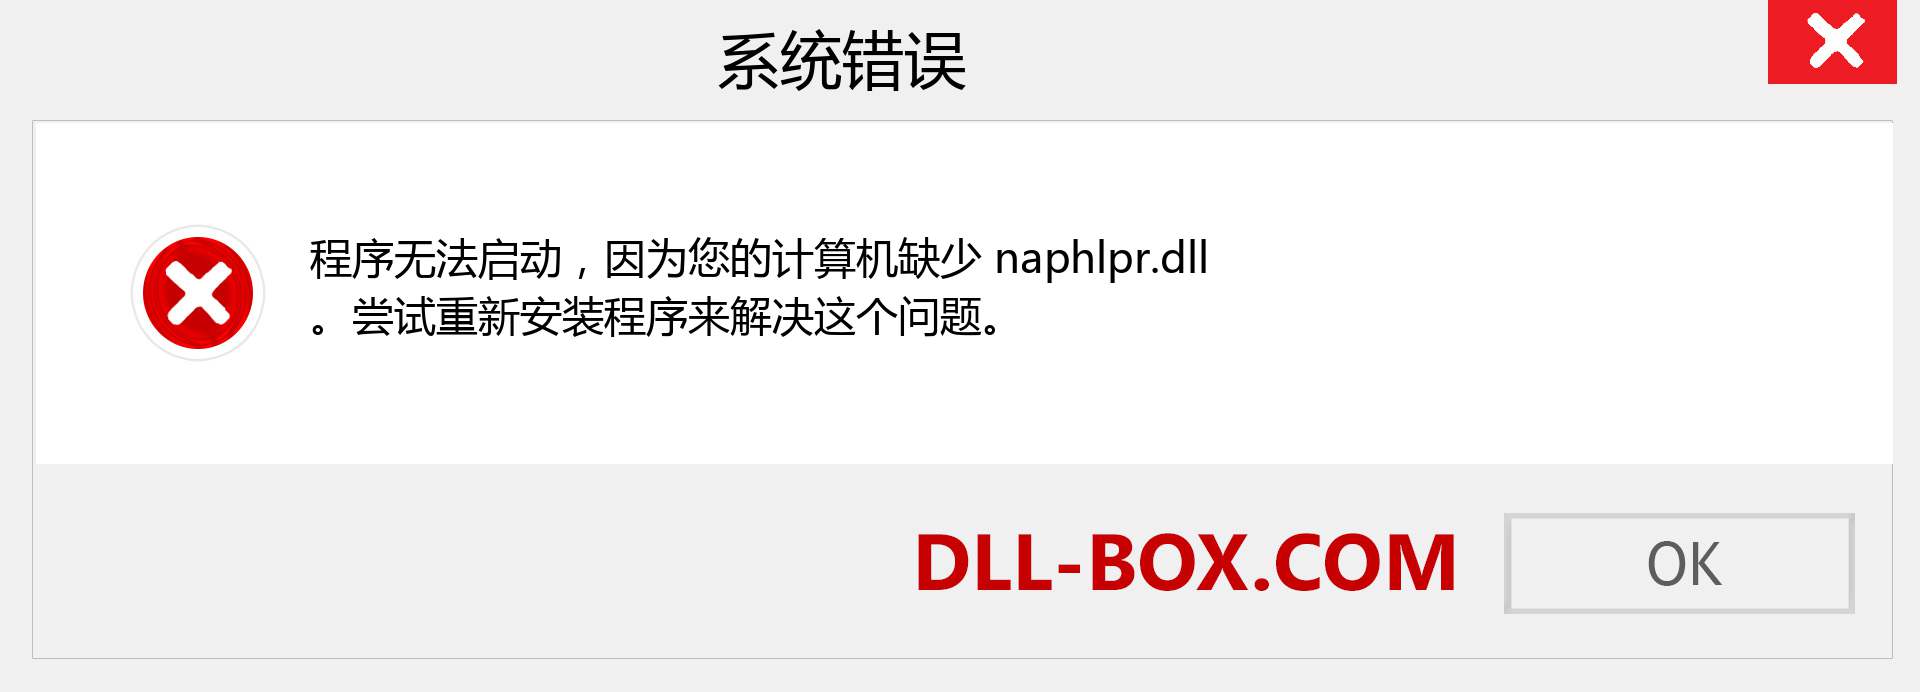 naphlpr.dll 文件丢失？。 适用于 Windows 7、8、10 的下载 - 修复 Windows、照片、图像上的 naphlpr dll 丢失错误